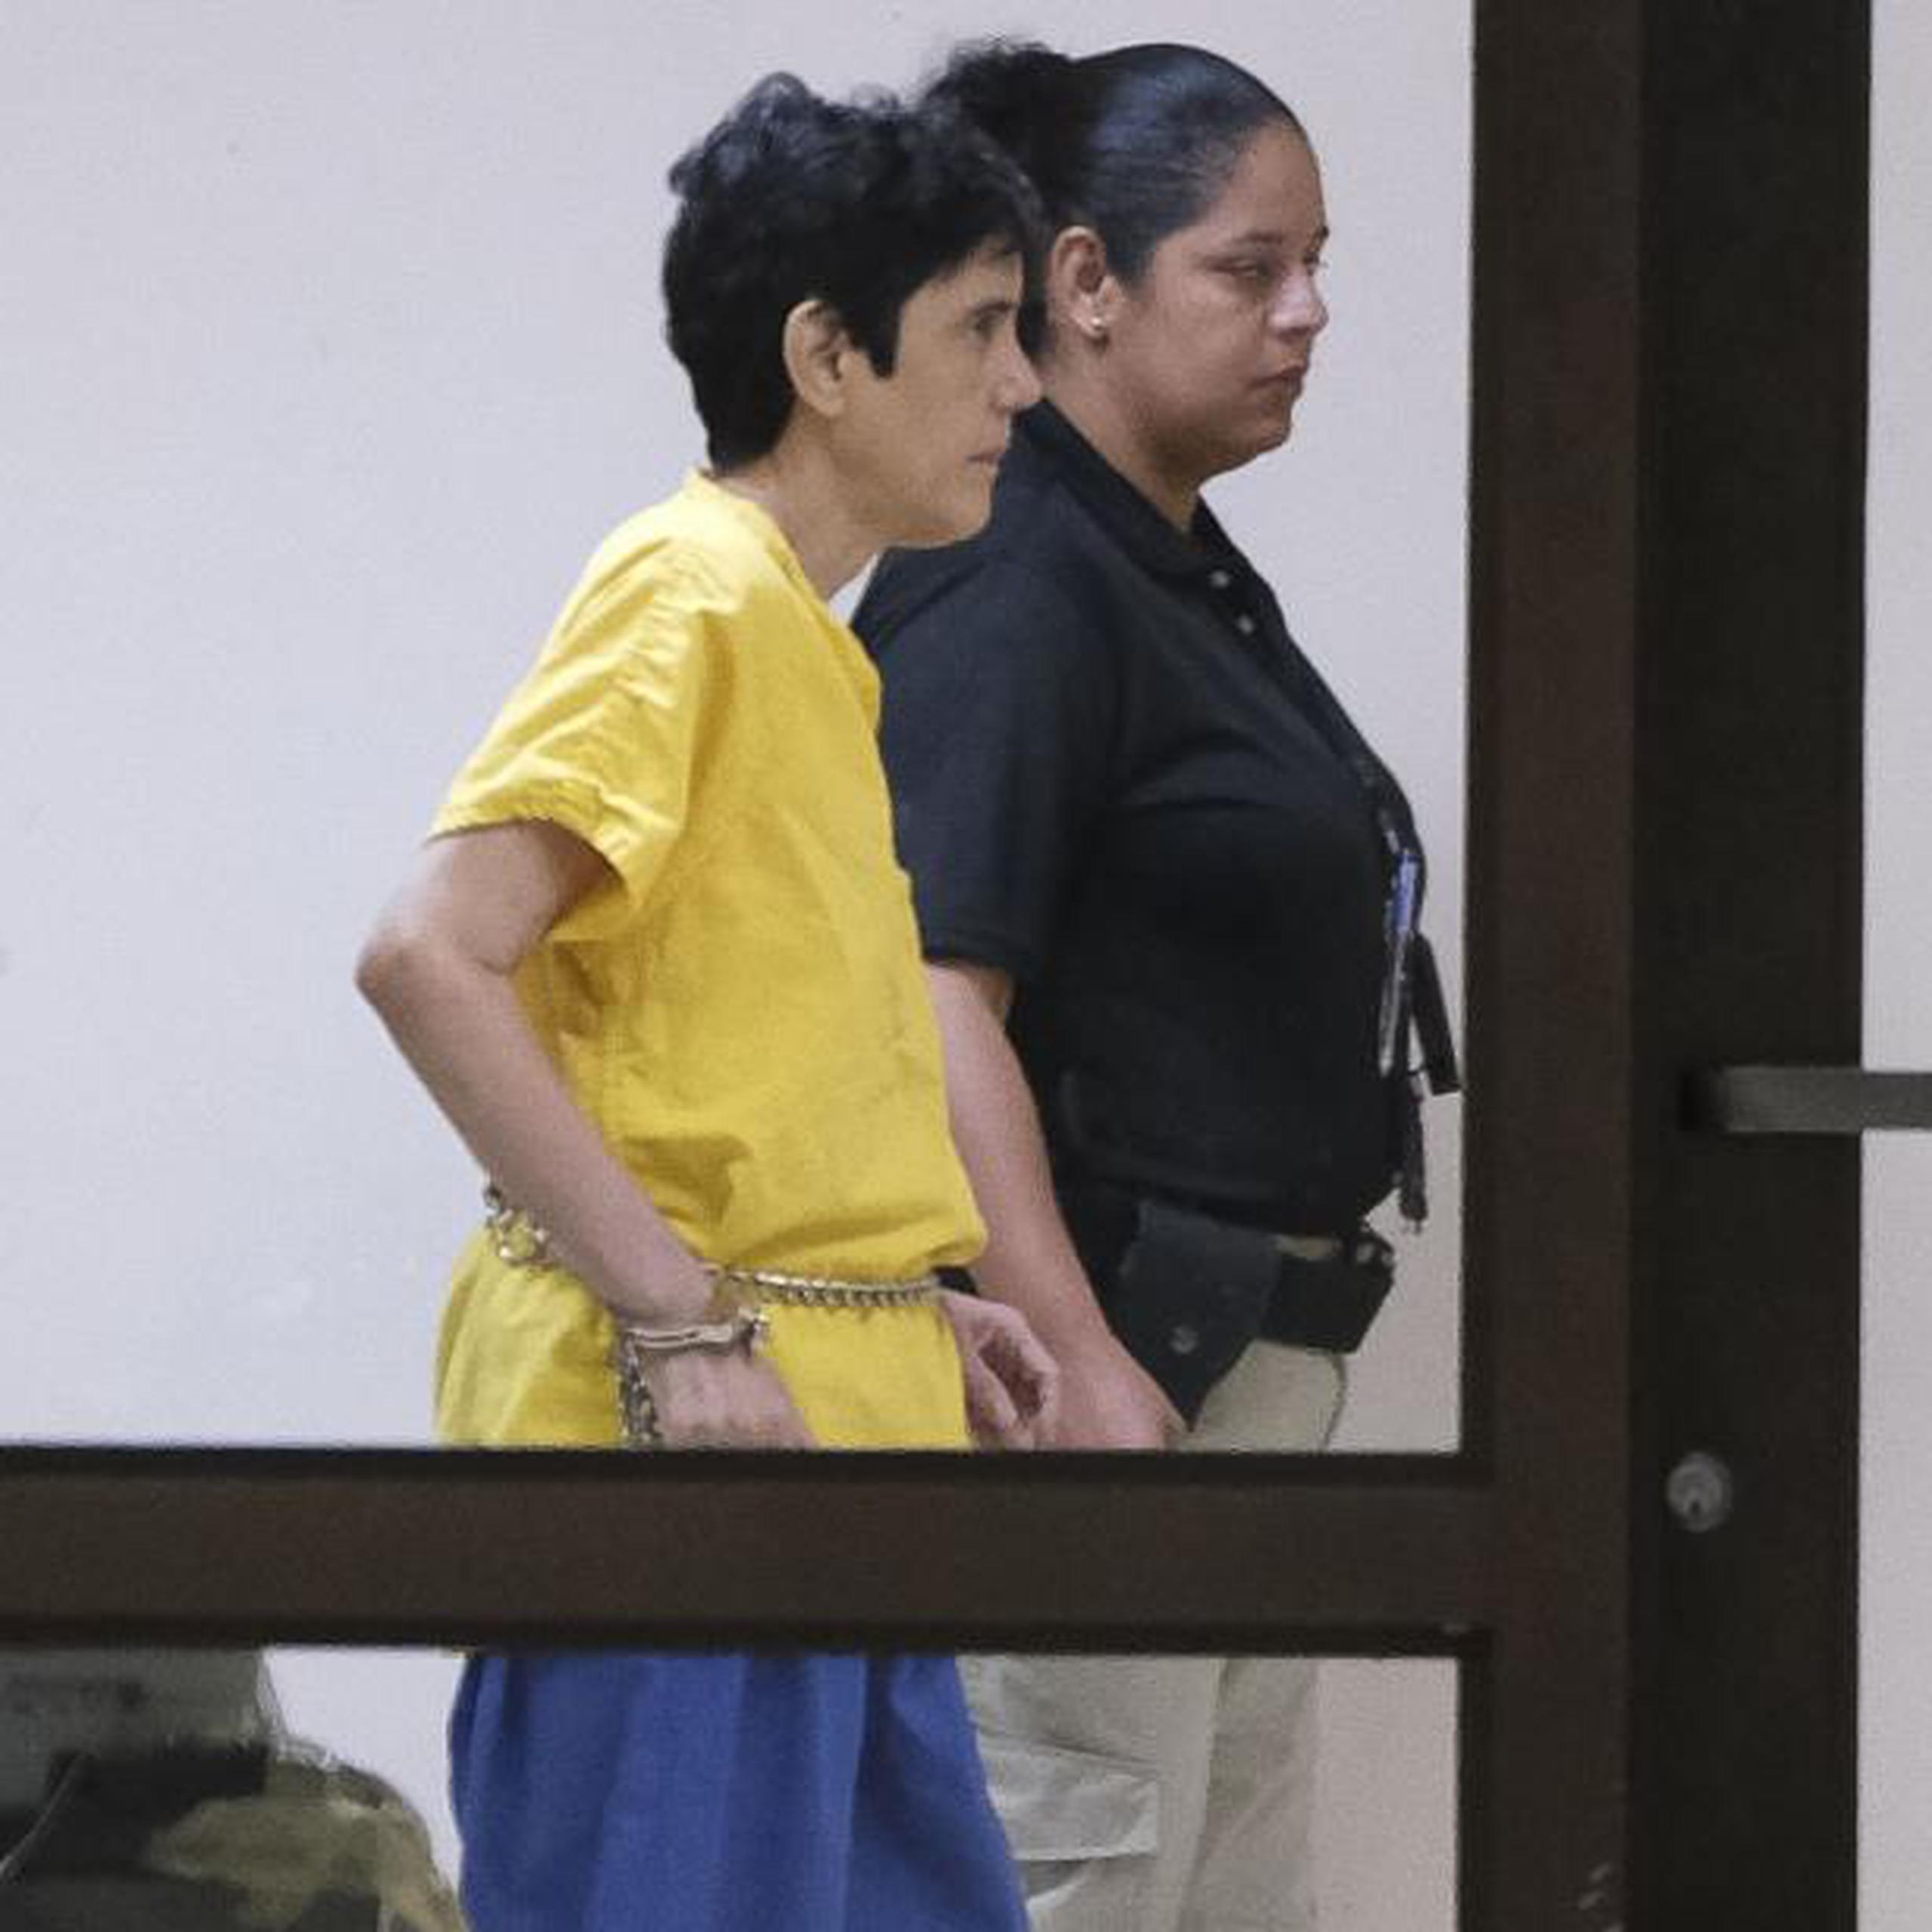 Mireya María de Córdova Figueroa llegó hoy a la sala 606 del tribunal encadenada de manos y pies, y lucía cansada. (gerald.lopez@gfrmedia.com)